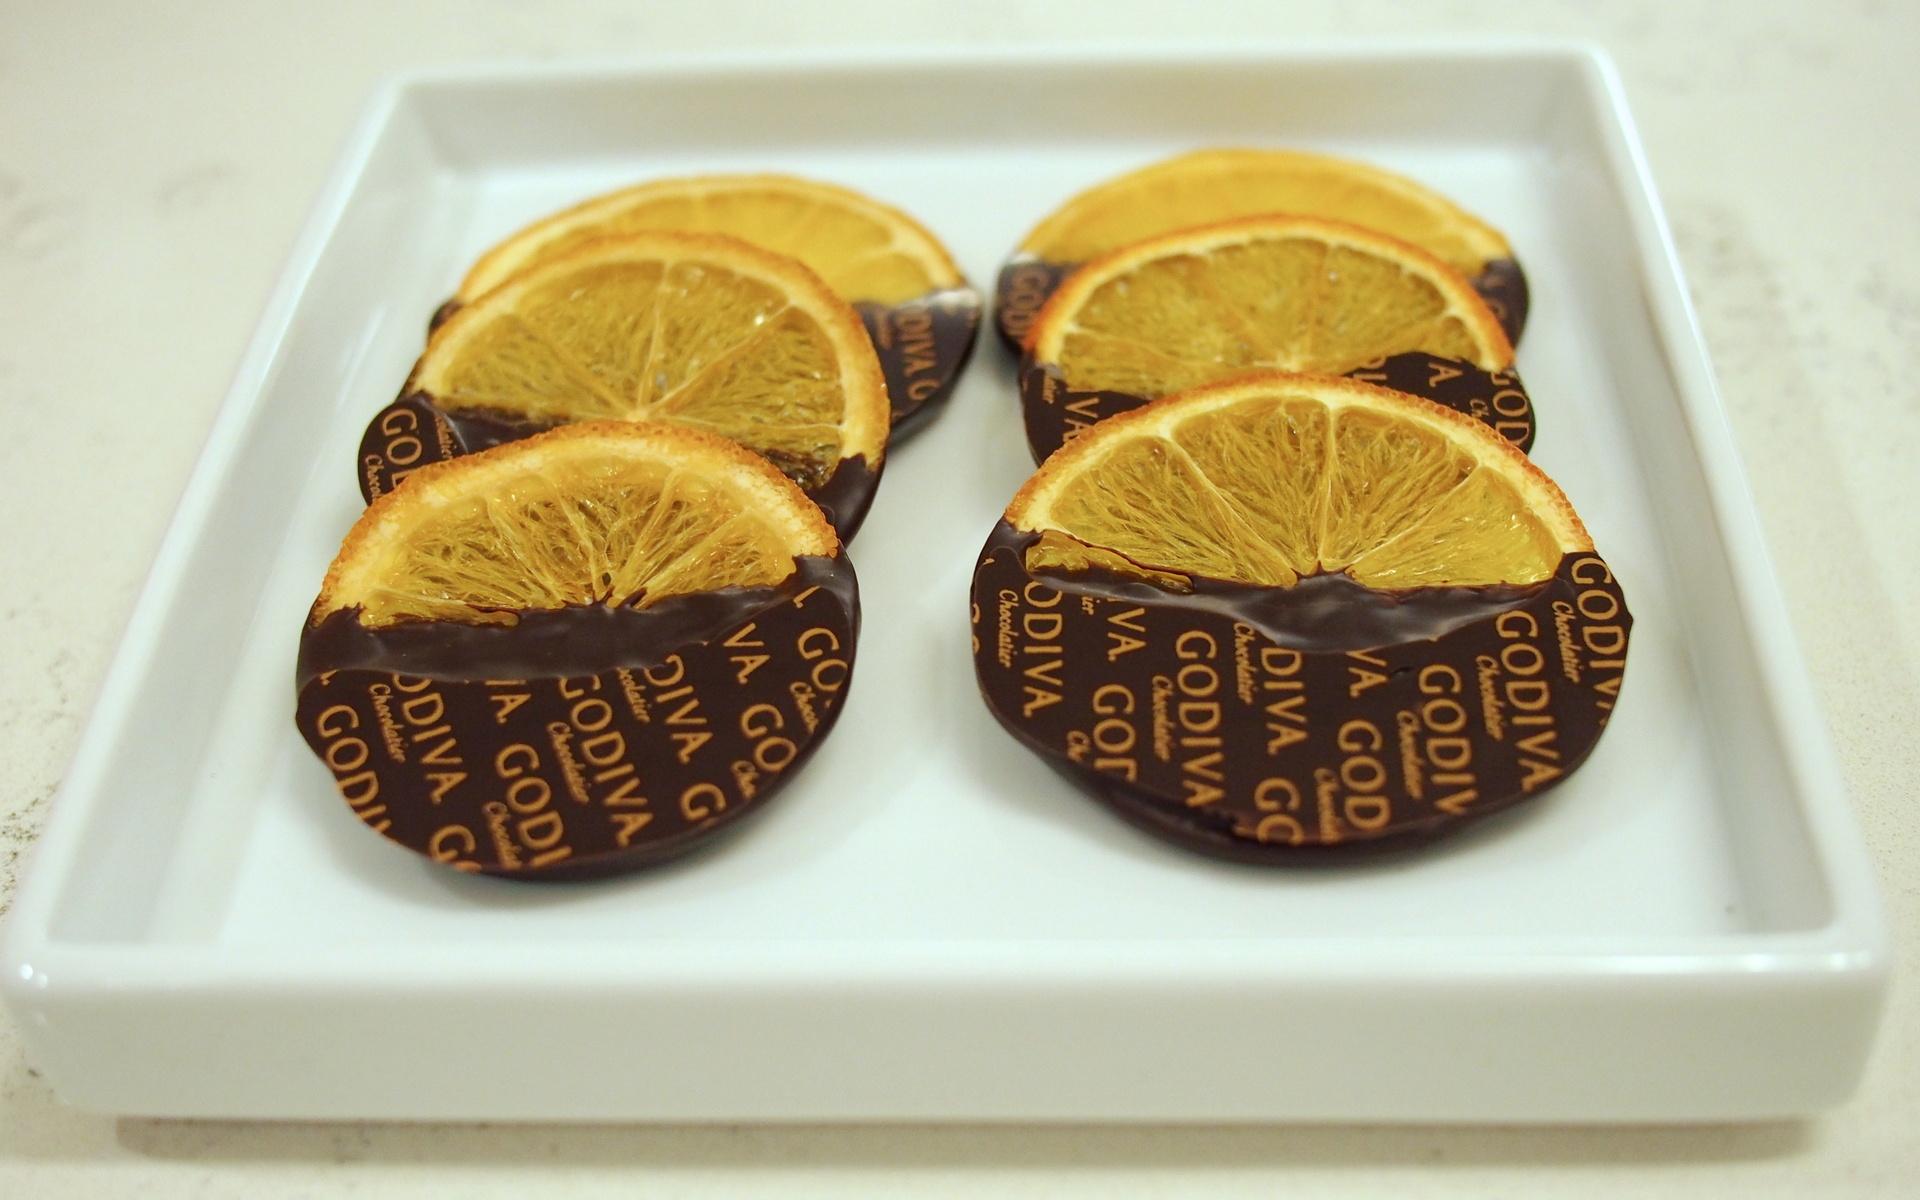 Godiva, Godiva Logo, Chocolate Orange, Godiva Chocolate